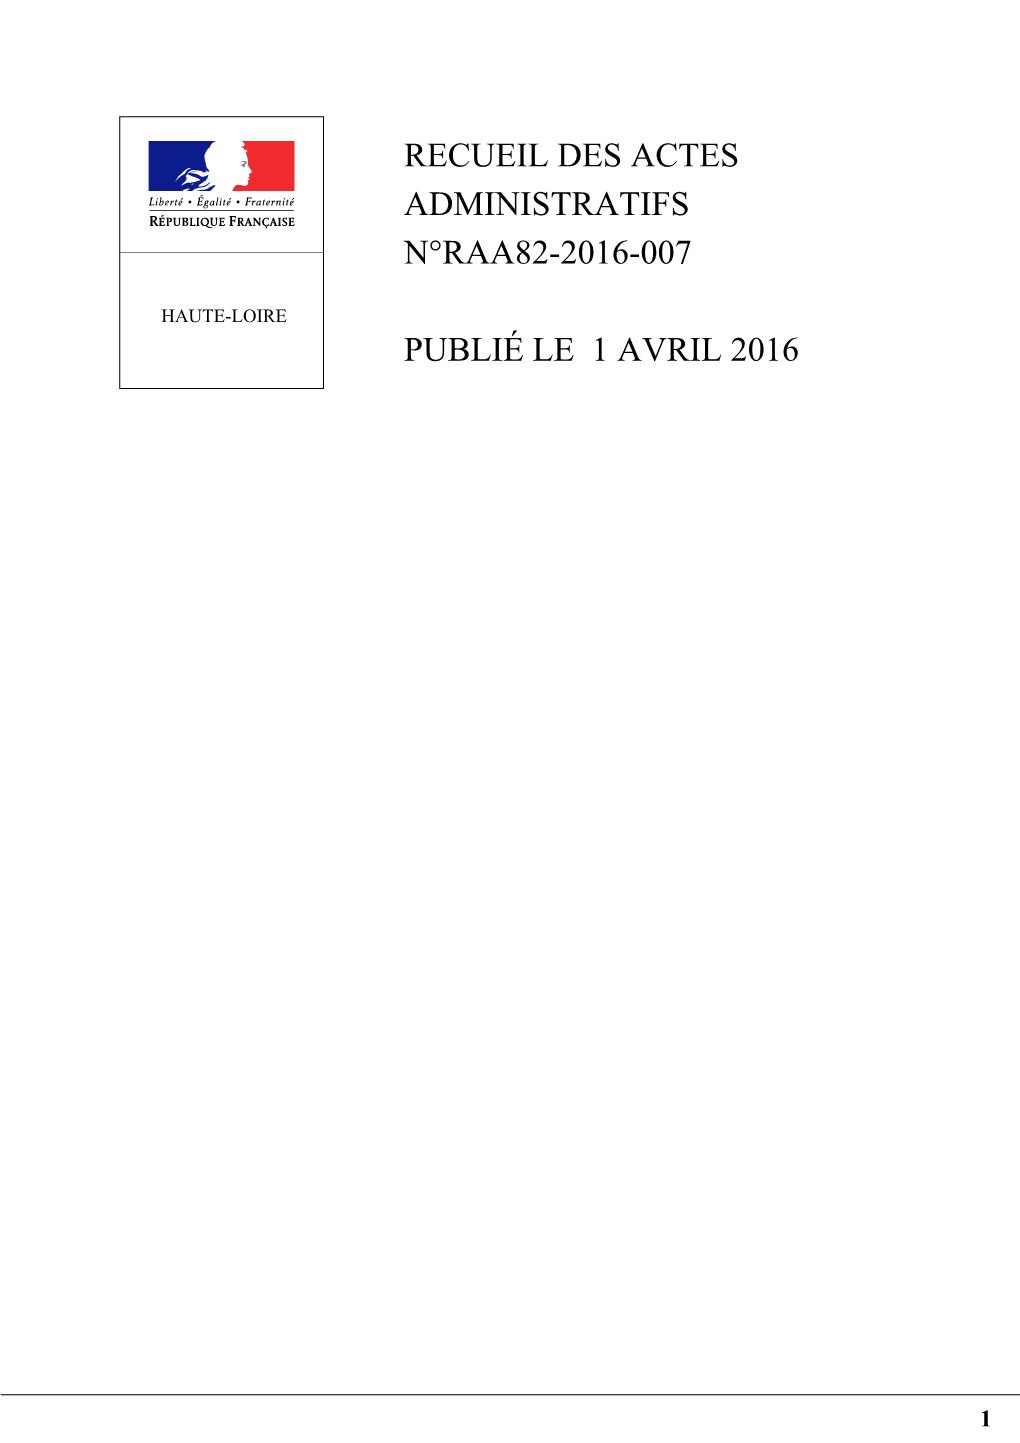 Recueil Des Actes Administratifs N°Raa82-2016-007 Publié Le 1 Avril